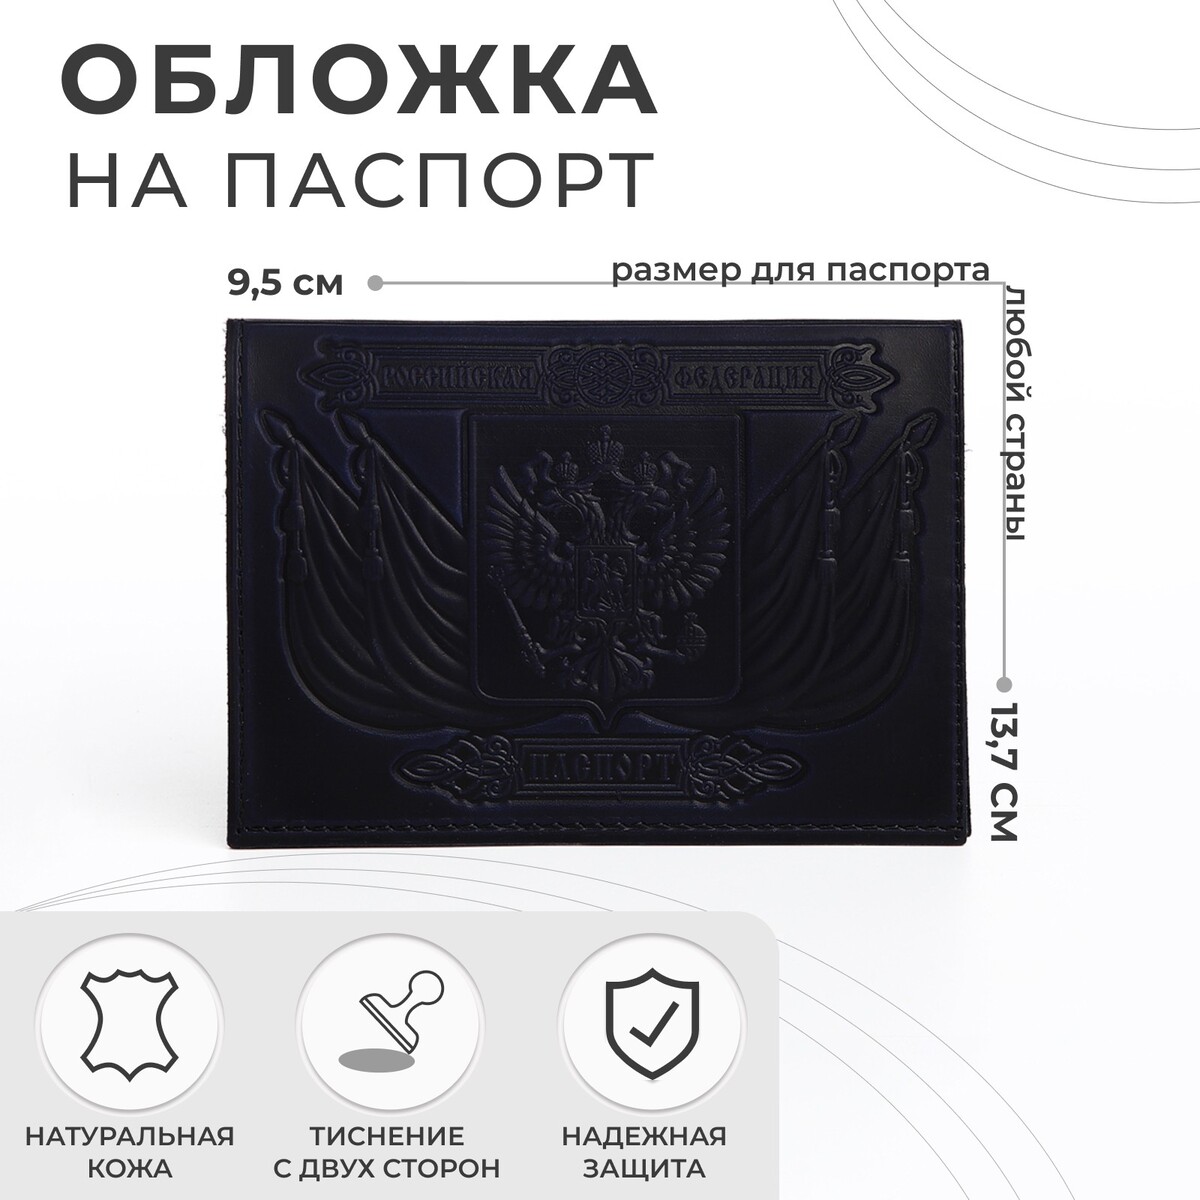 Обложка для паспорта, тиснение, герб, цвет темно-синий